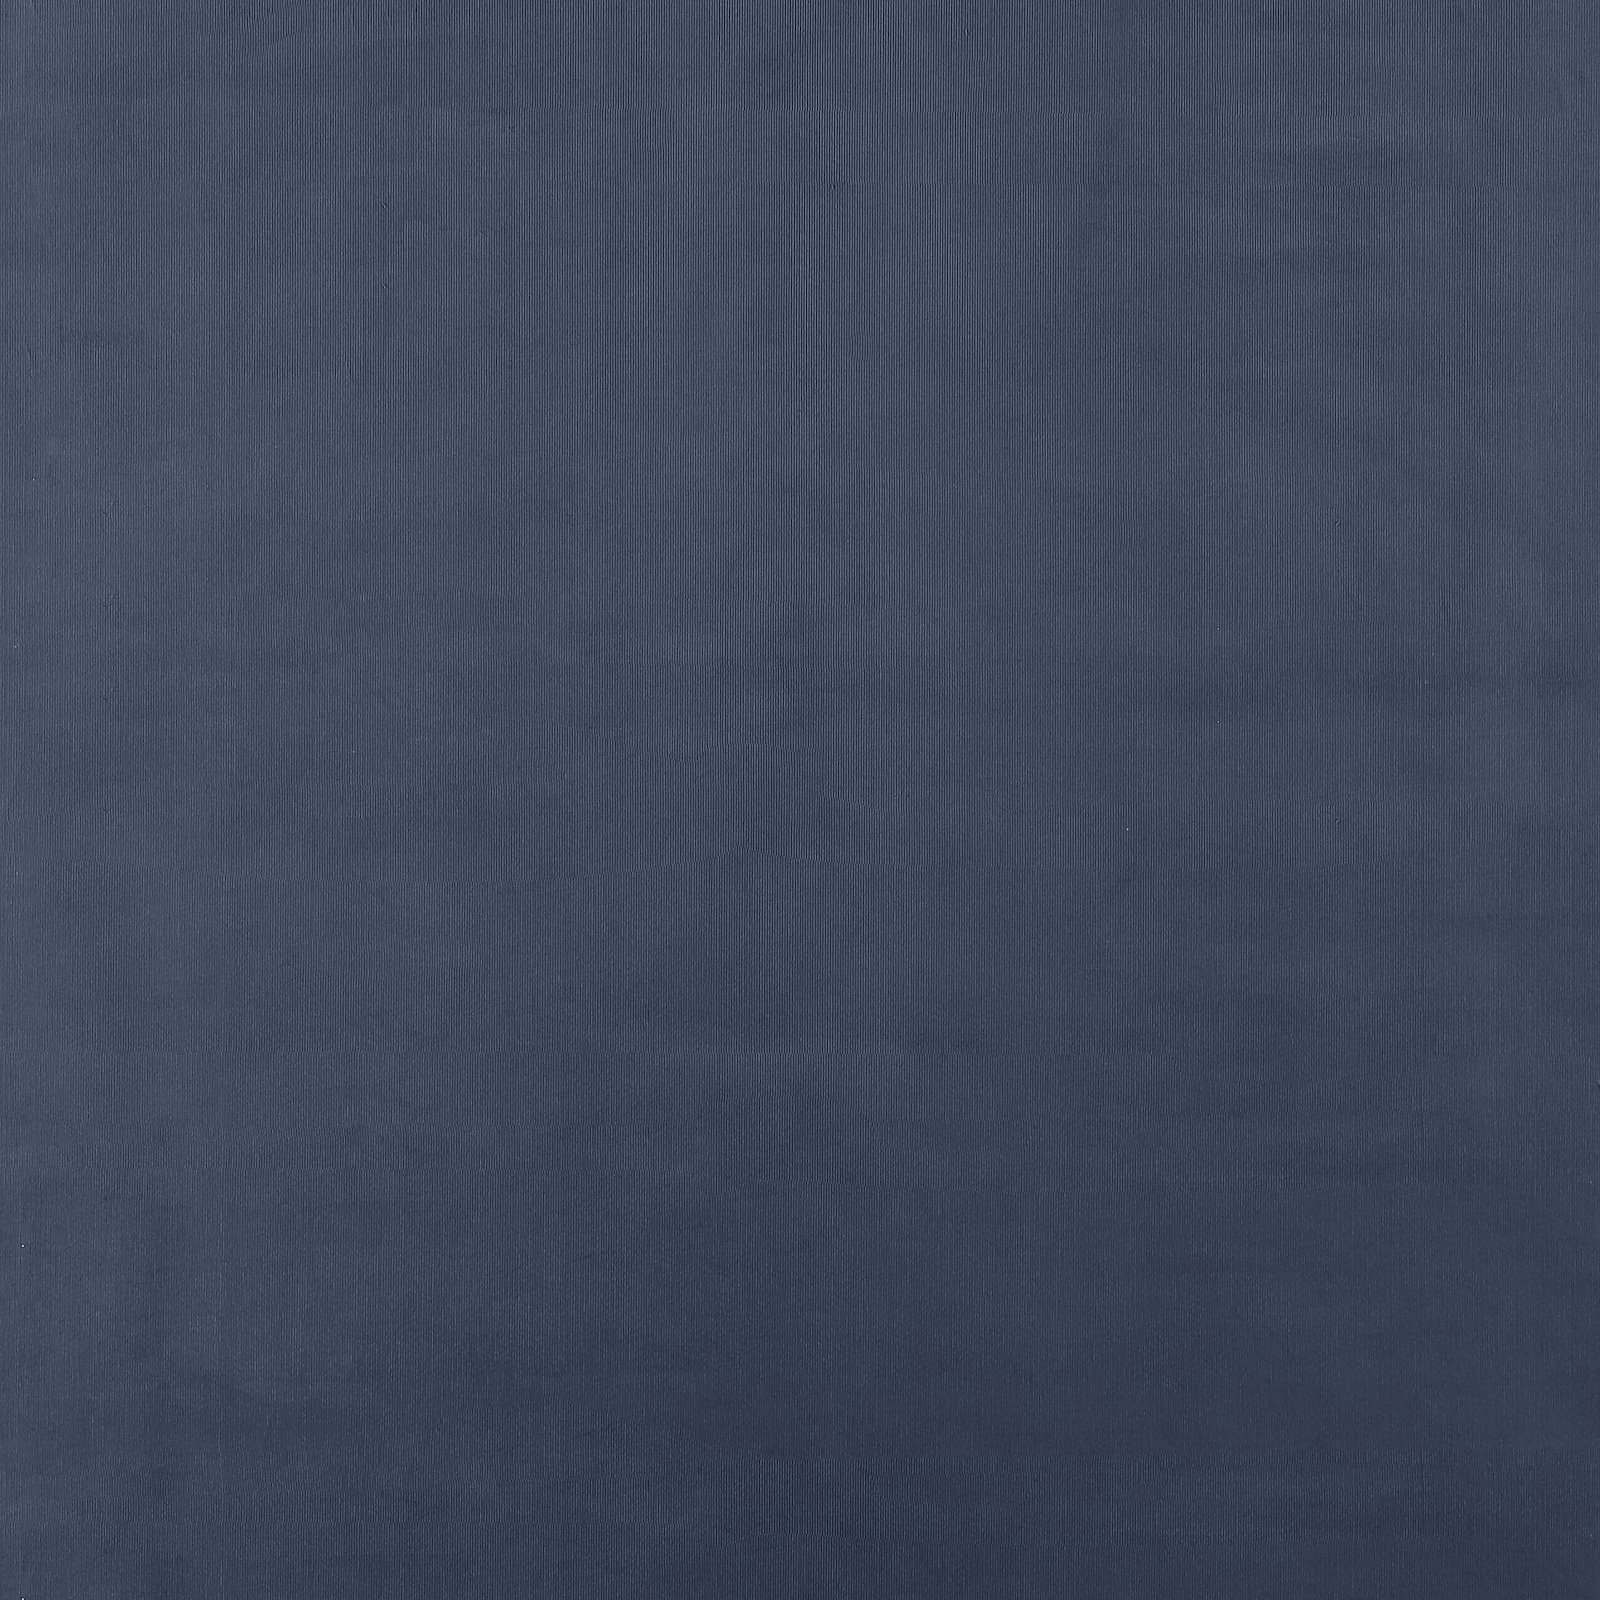 Smalspårig manchester 21 wales blå 430295_pack_solid